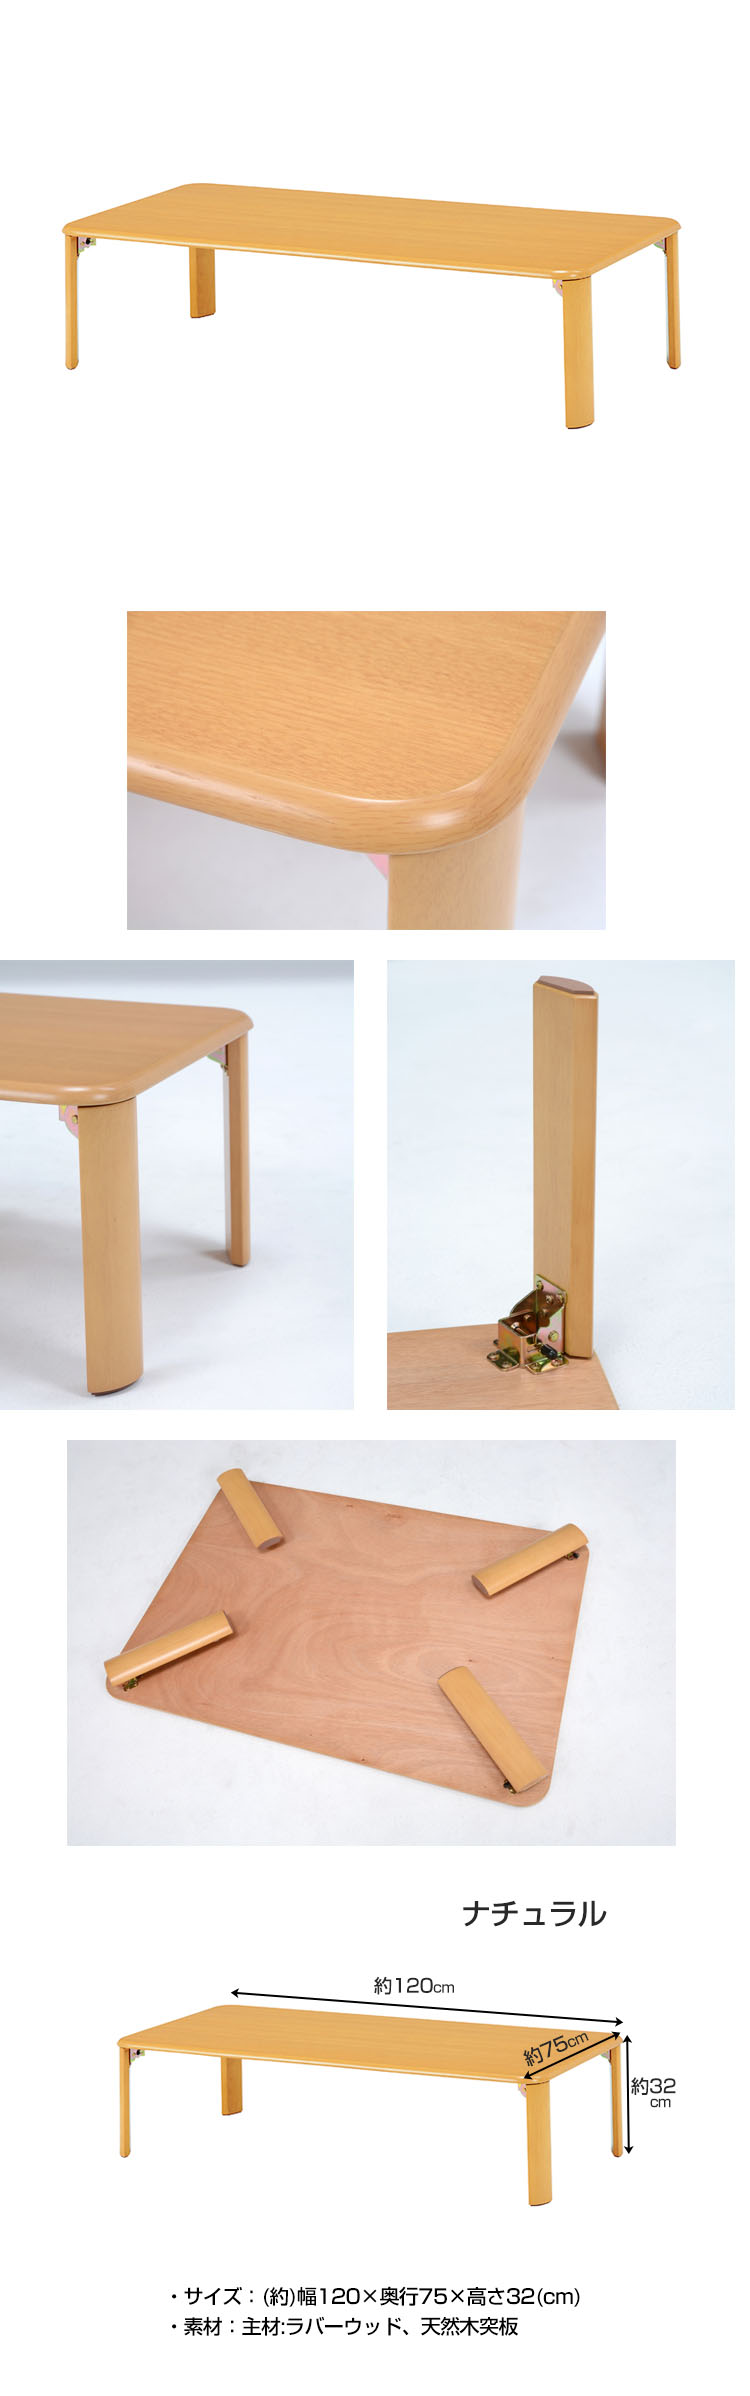 品質人気SALE折れ脚 リビングテーブル 120cm×75cm 脚 折りたたみ ローテーブル ちゃぶ台 木製 おしゃれ テーブル 座卓、ちゃぶ台